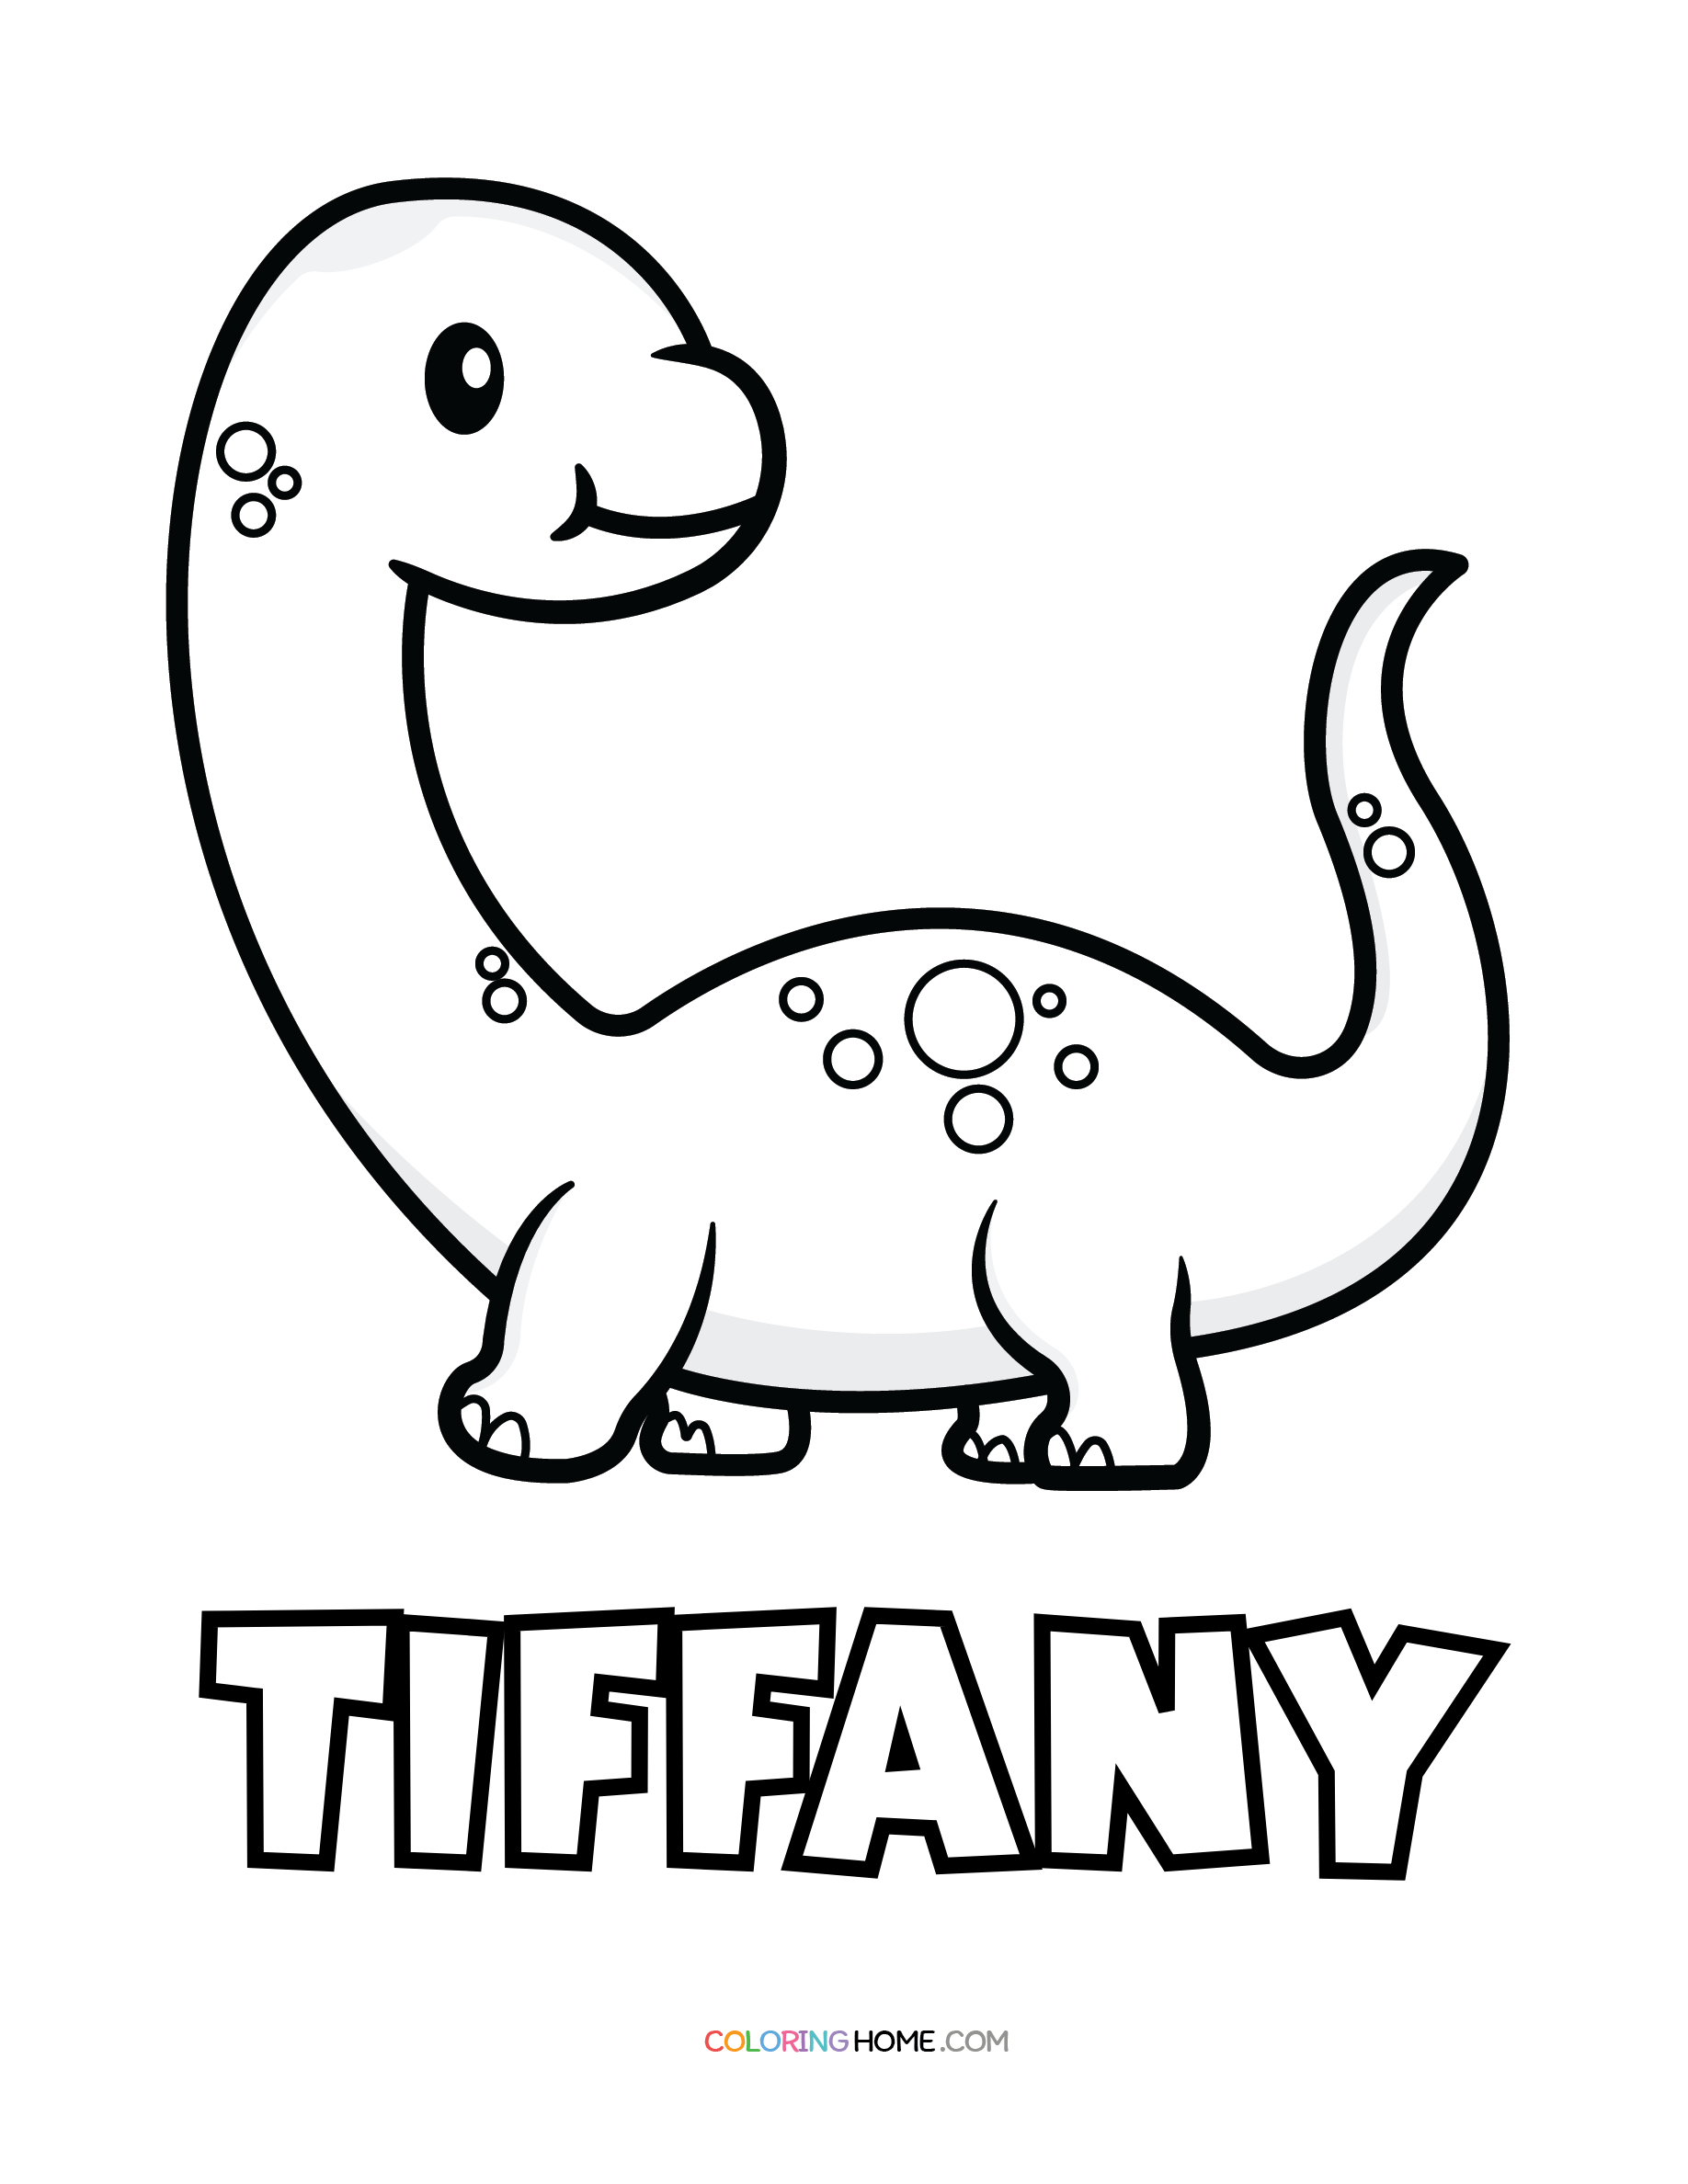 Tiffany dinosaur coloring page